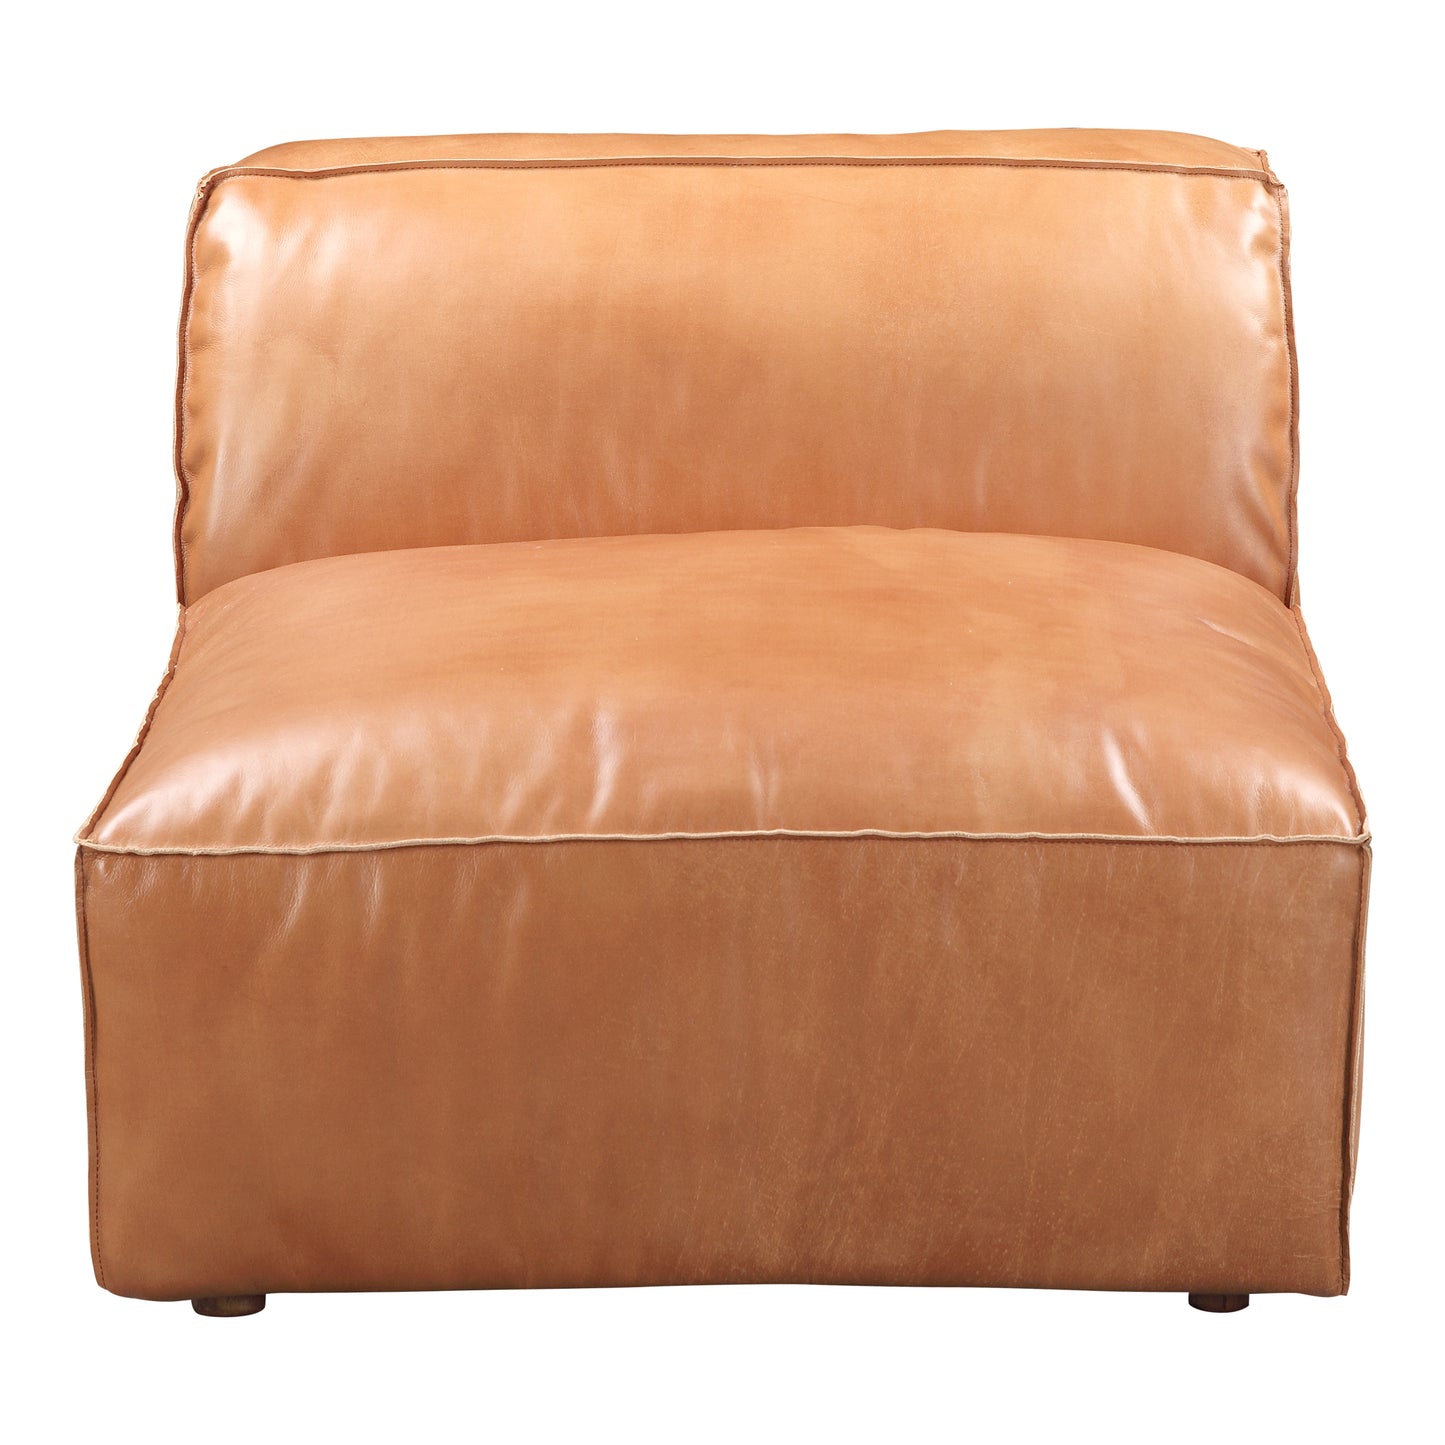 Luxe Slipper Chair Tan QN-1019-40